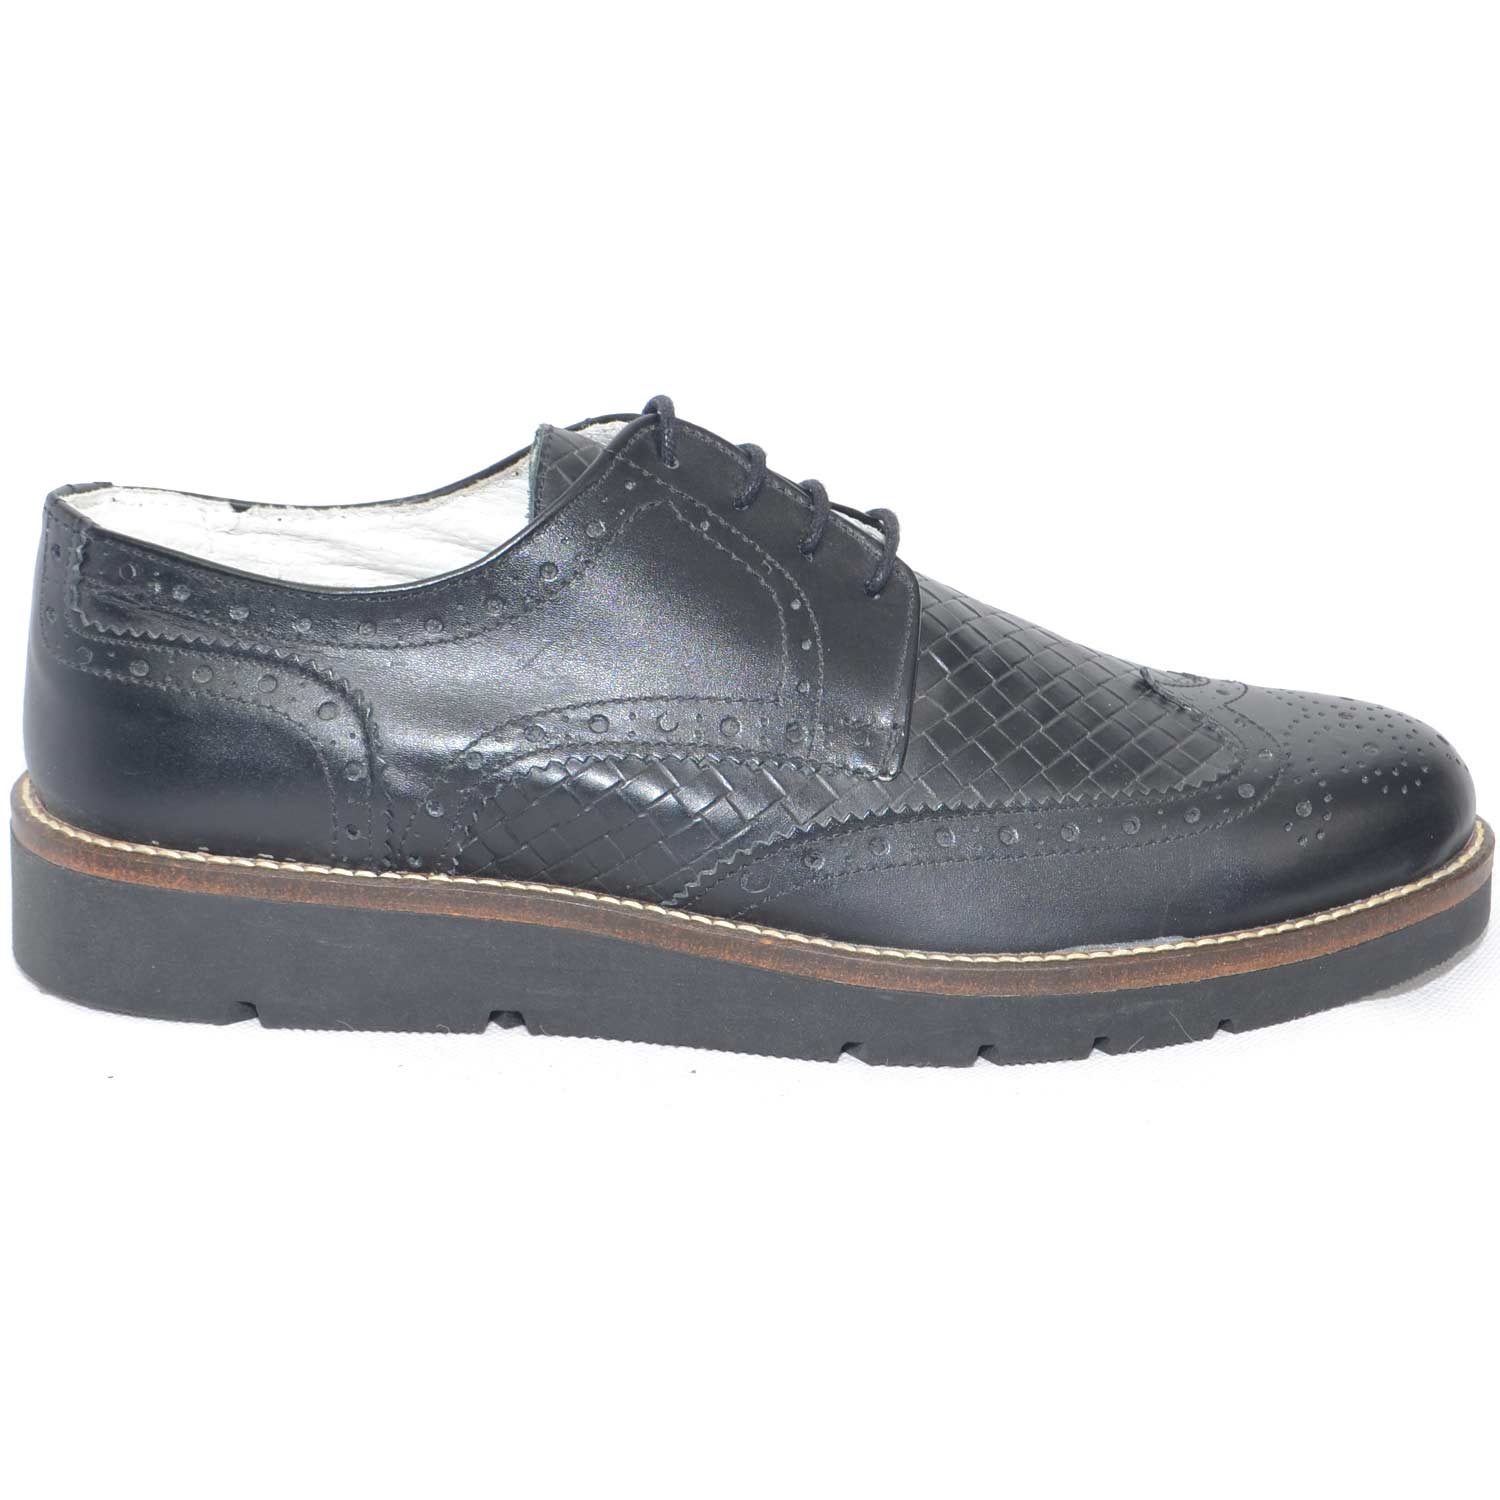 scarpe uomo stringate vera pelle crust nero made in italy classico sportivo man fondo antiscivolo ultraleggero.